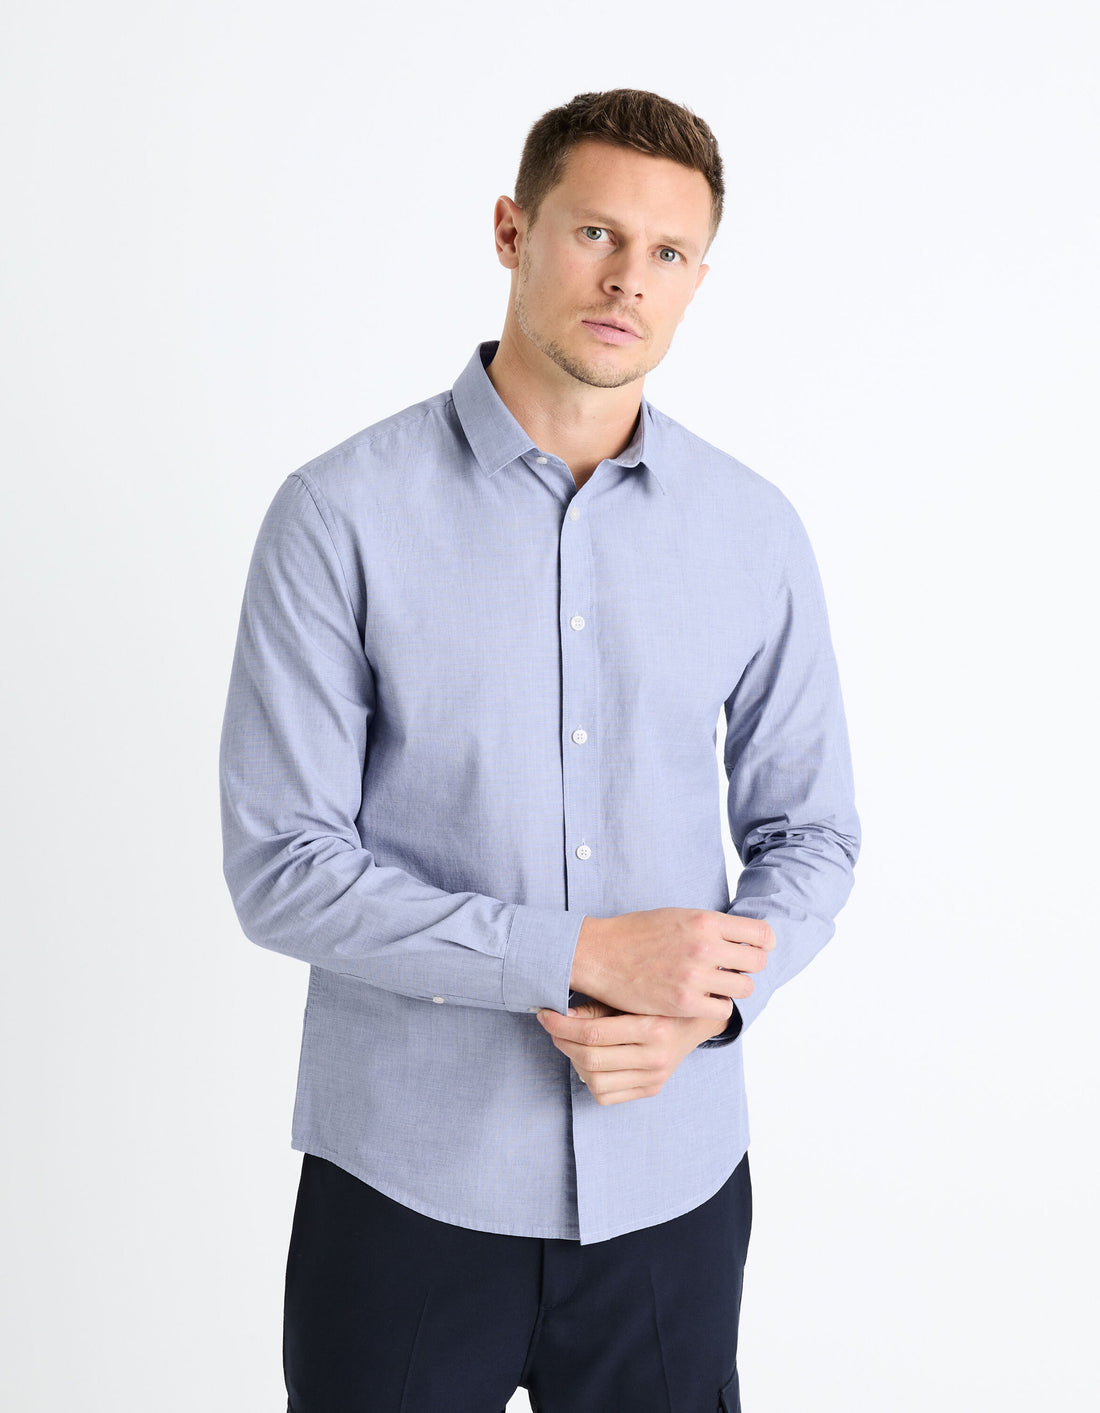 Regular Shirt 100% Cotton - Blue_FAFILE_BLUE_01